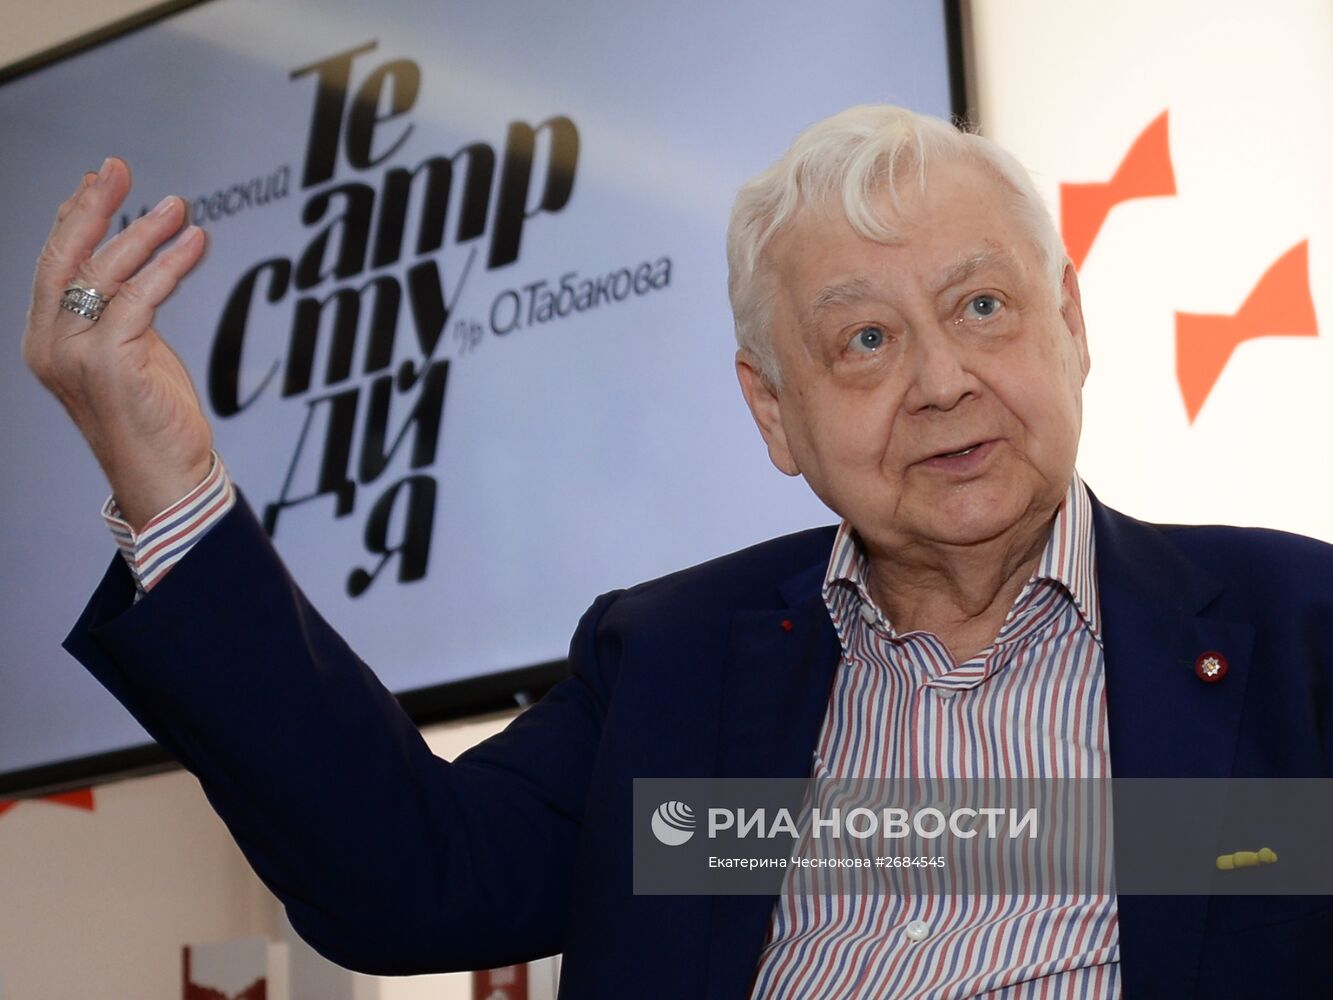 Открытие нового юбилейного сезона в Театре под руководством Олега Табакова